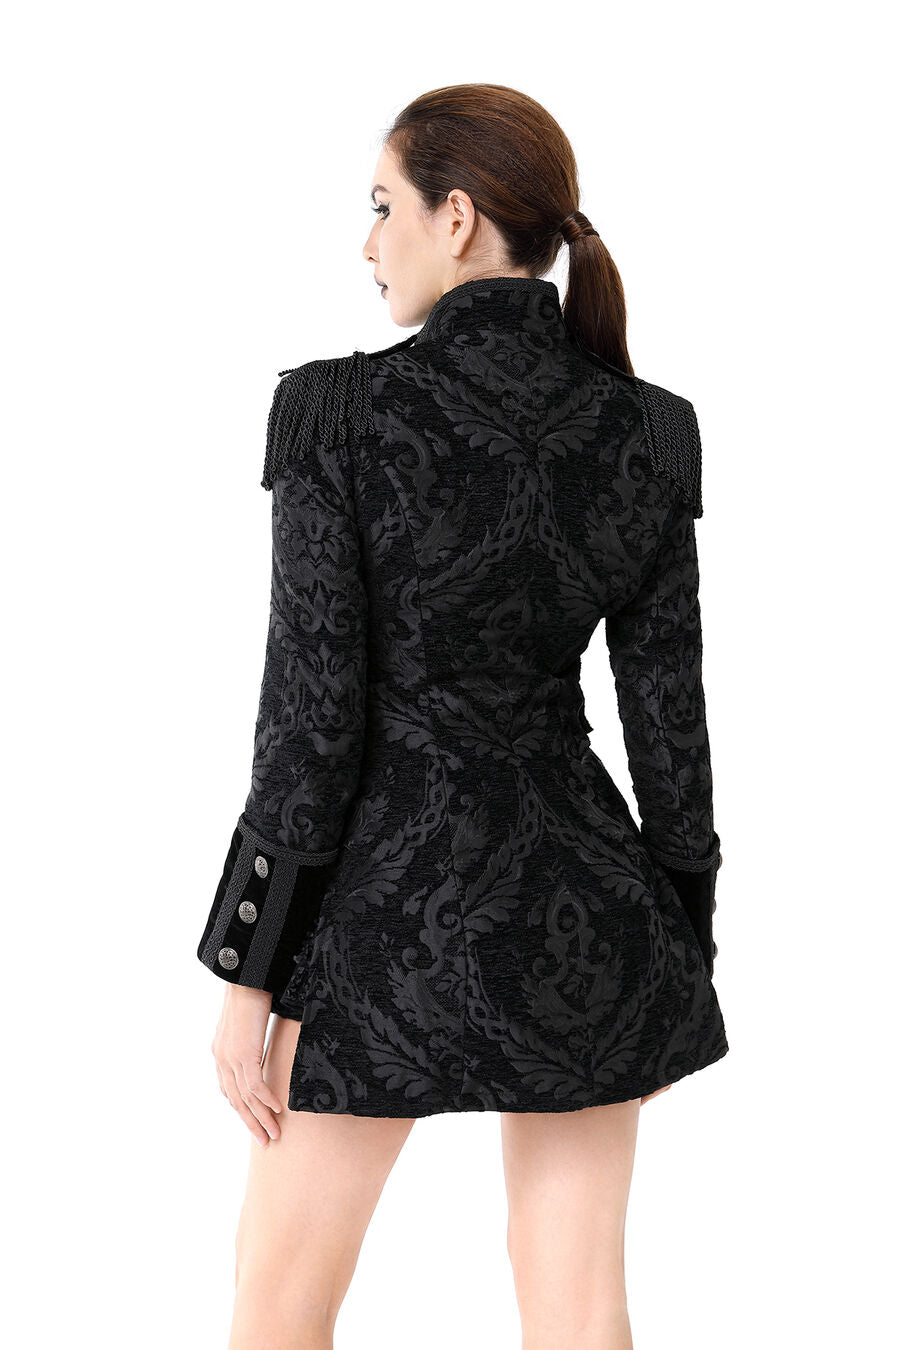 veste femme jacquard gothique queue-de-pie Noir